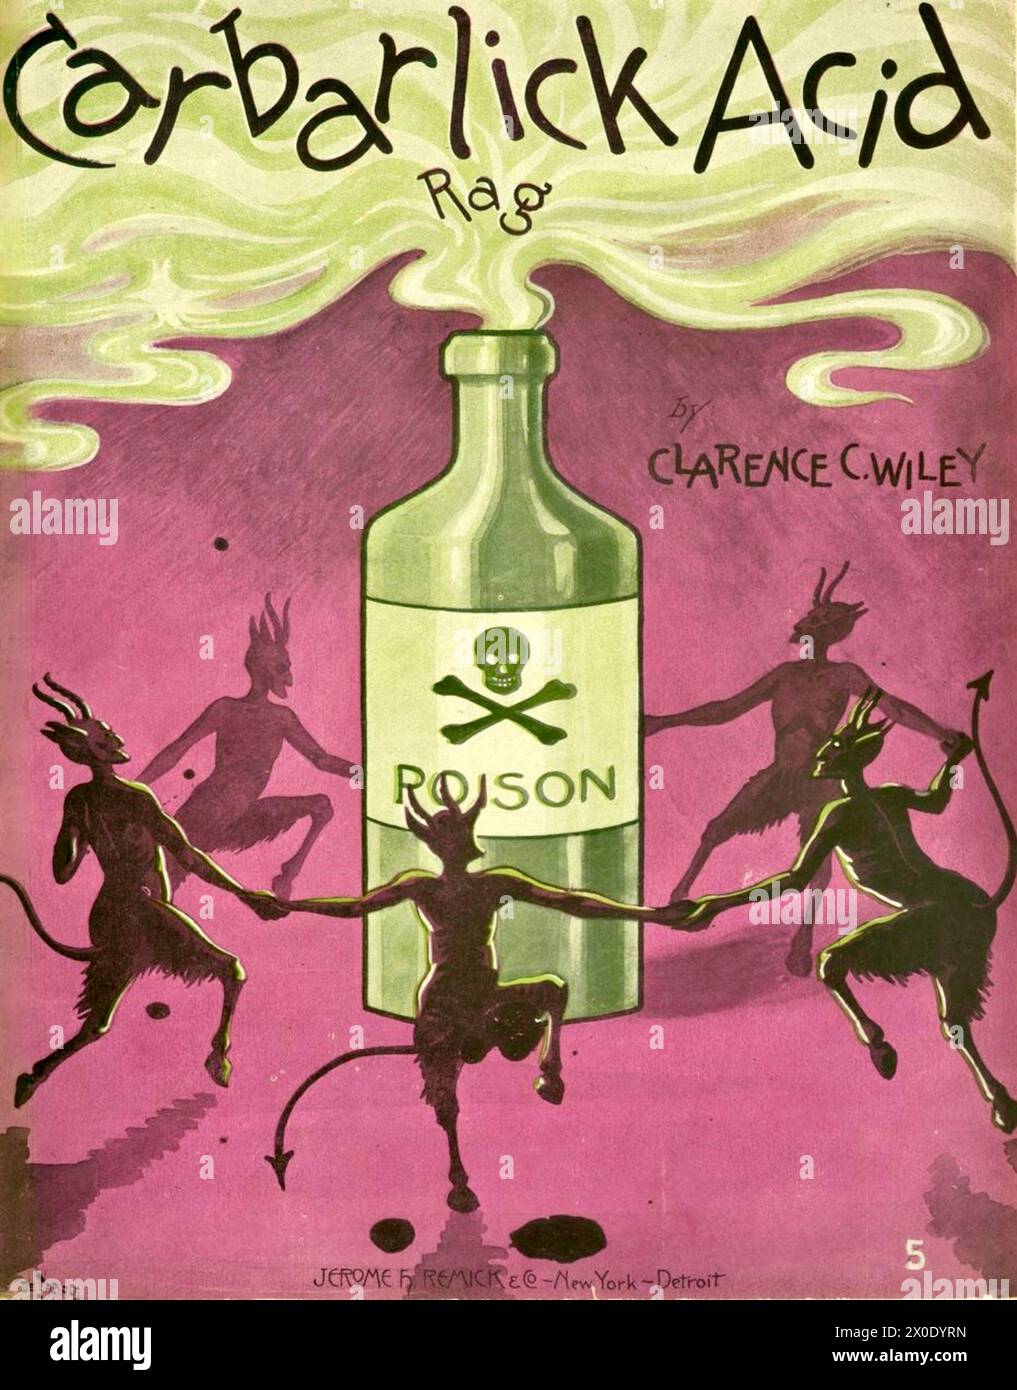 André De Takacs (artista ungherese-americano) - Carbarlick Acid Rag - 1904 - Spartiti di copertina con diavoli che ballano intorno a una bottiglia di veleno. Foto Stock